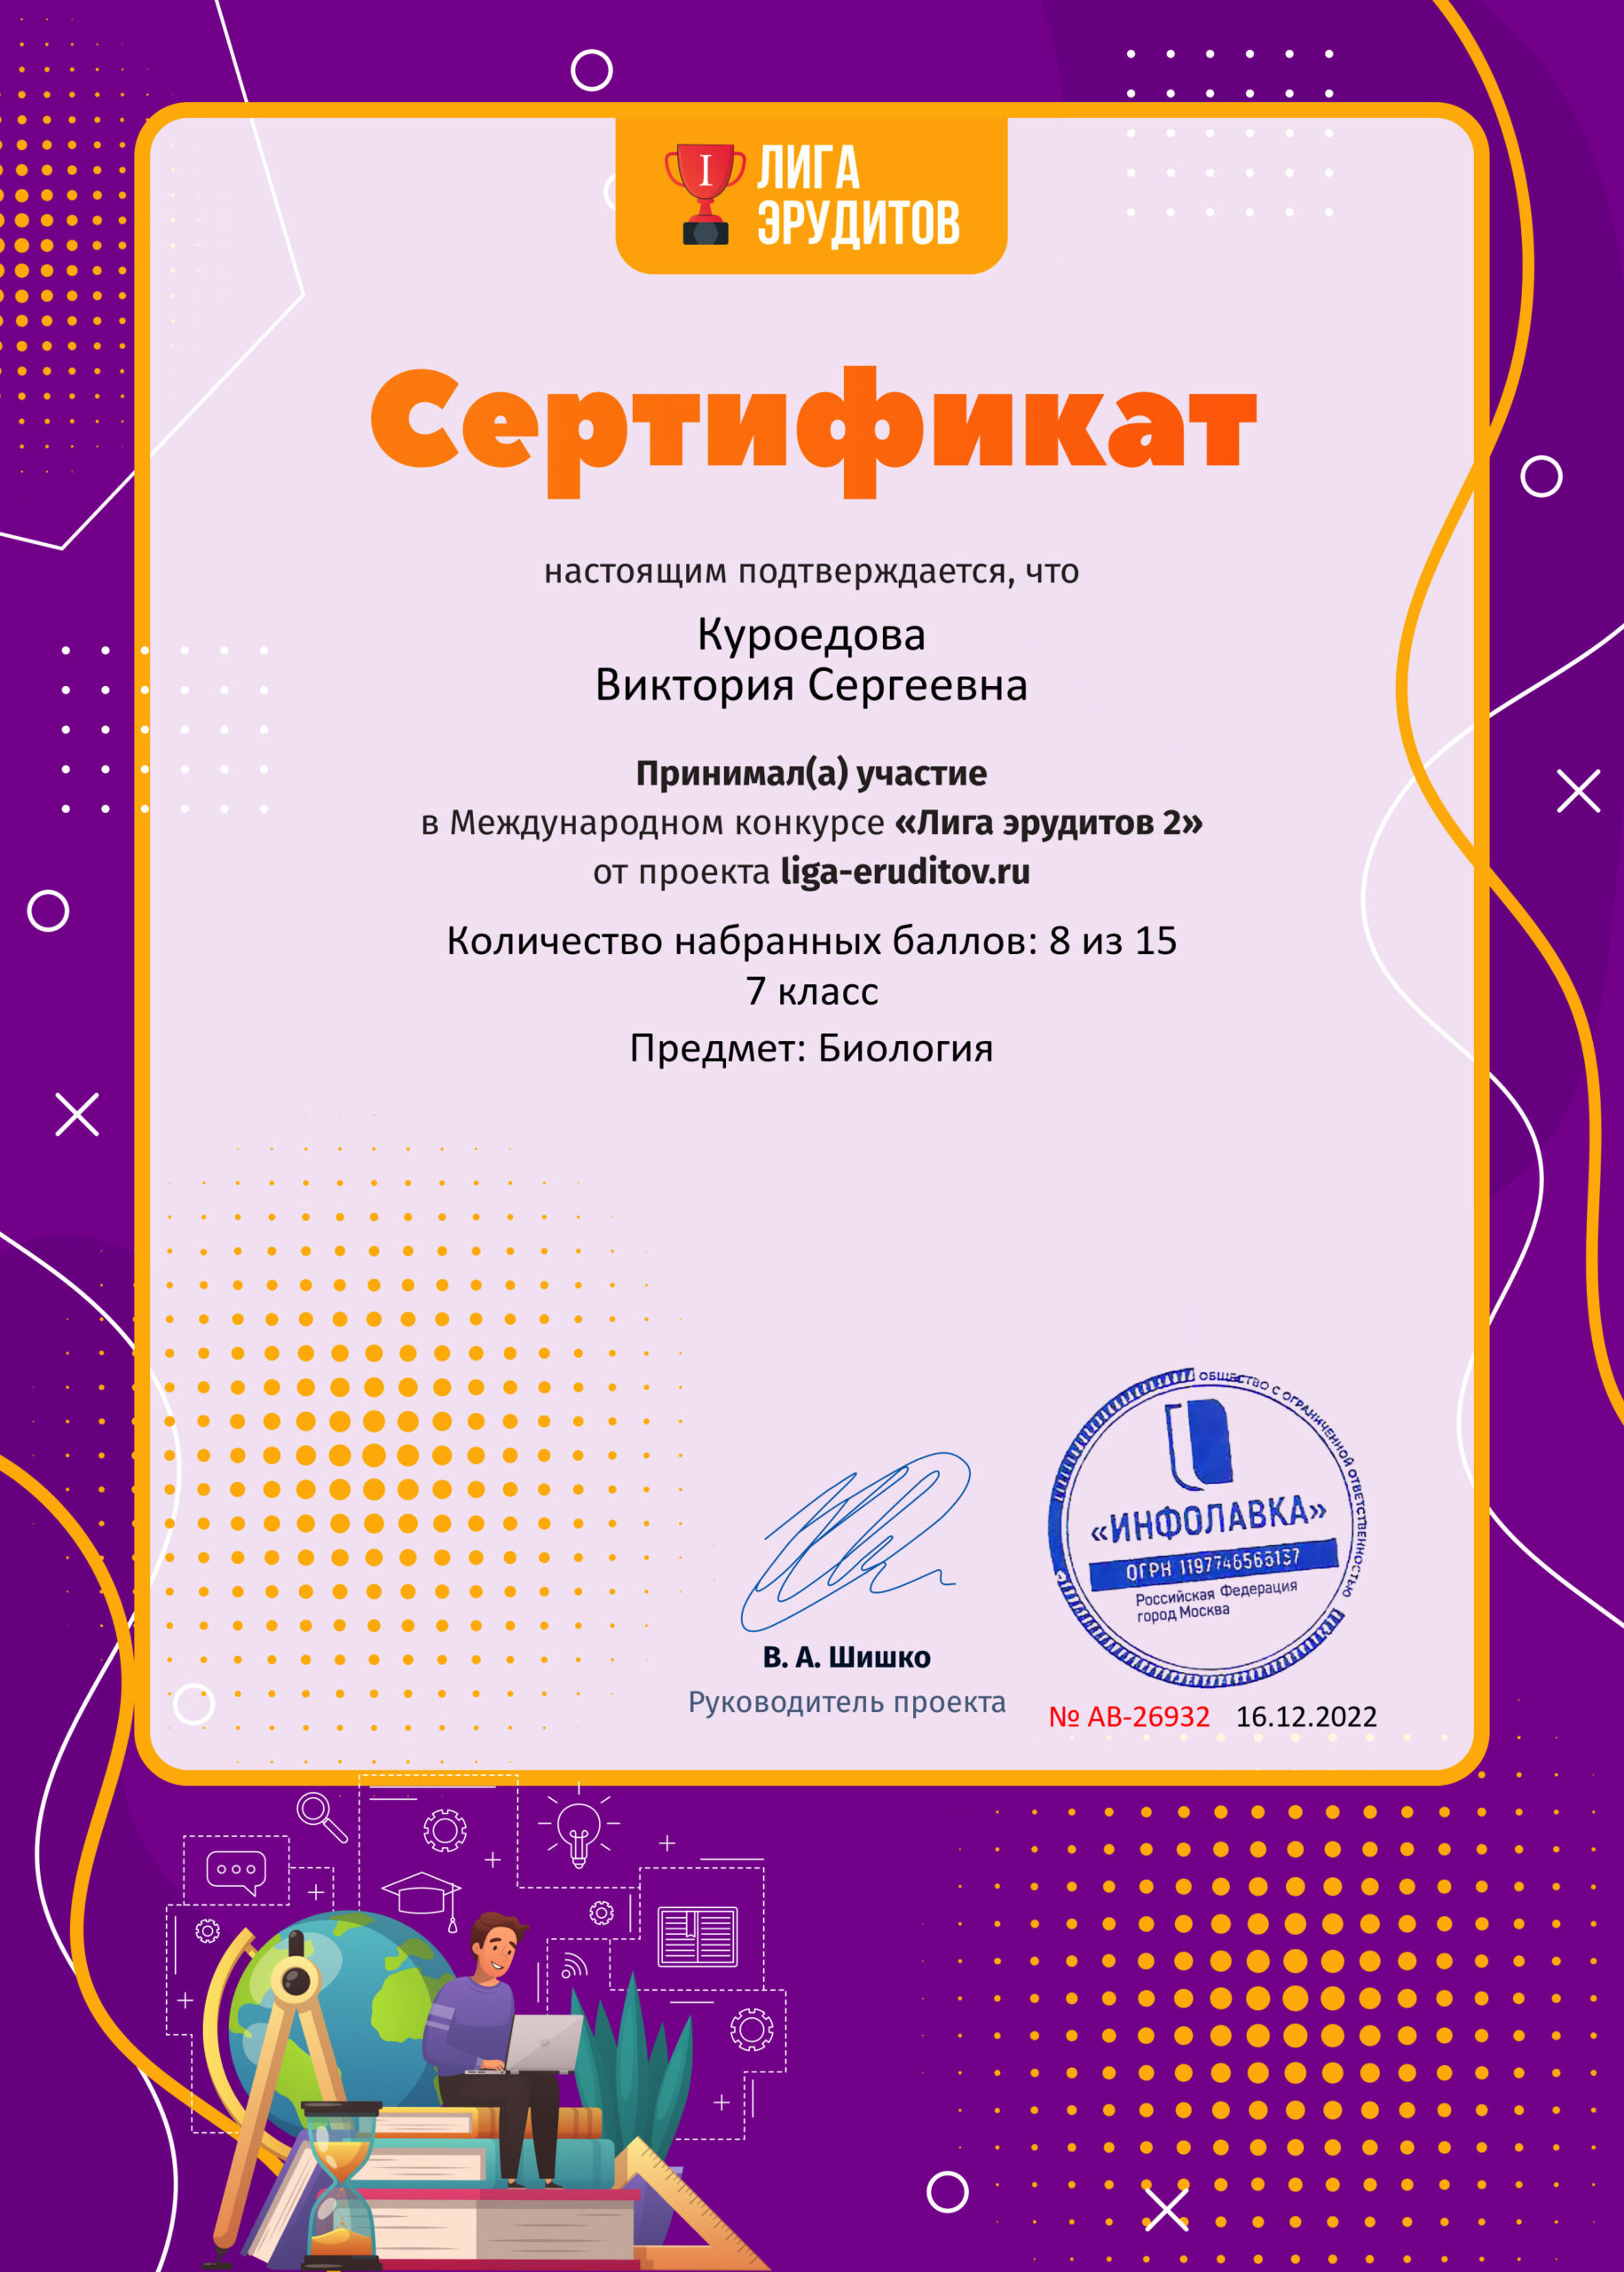 Сертификат проекта Лига Эрудитов №26932